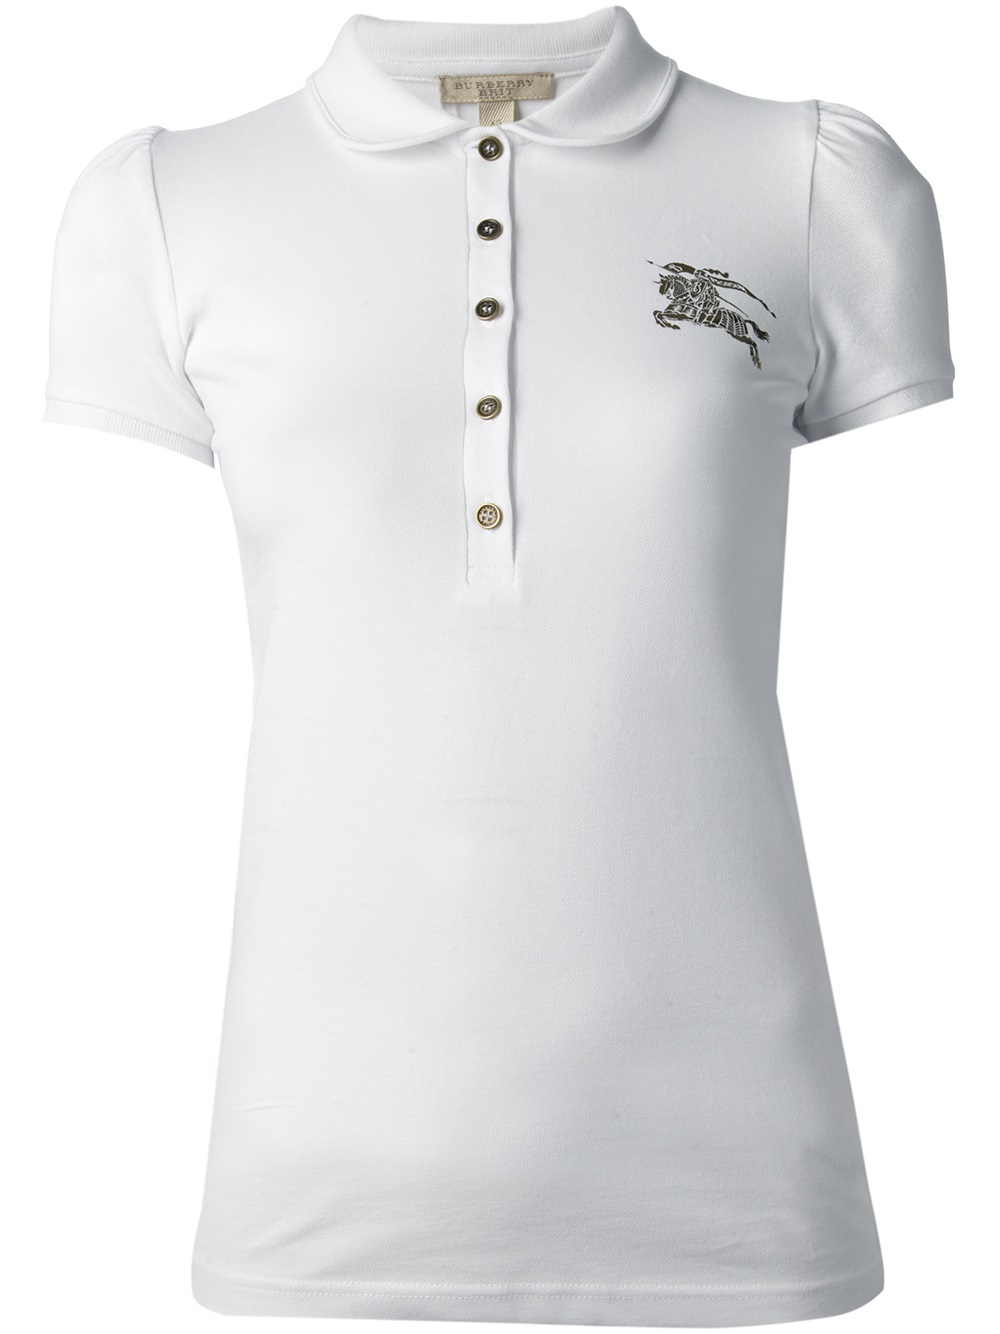 burberry polo shirt womens sale